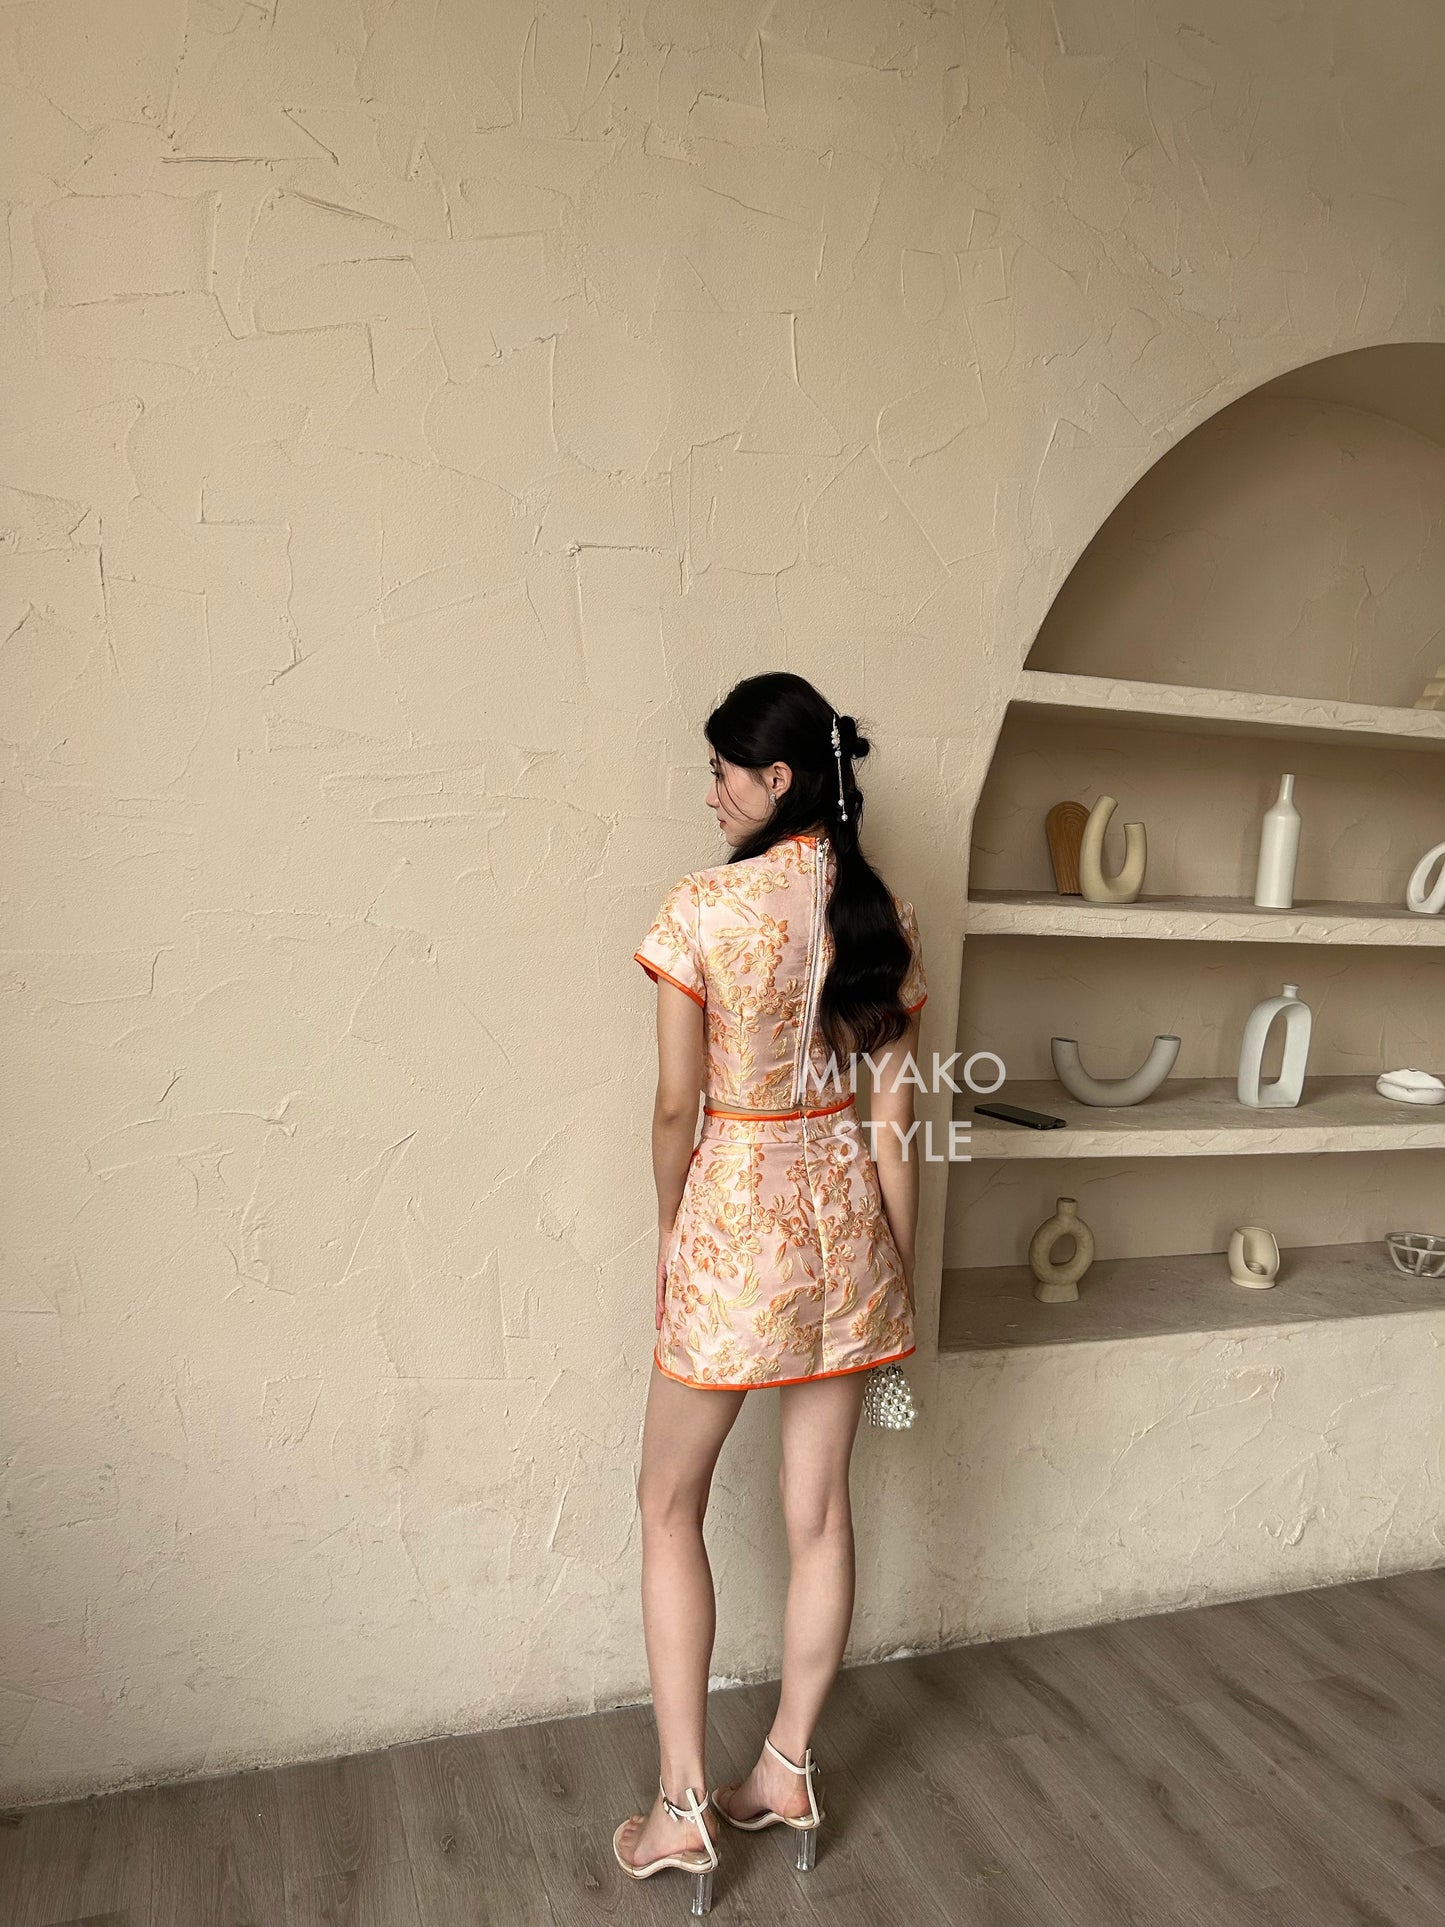 【龍華富貴】 Royal Cheongsam mini skirt in Tangerine FLOWER 桔祥如意 (裙子only)